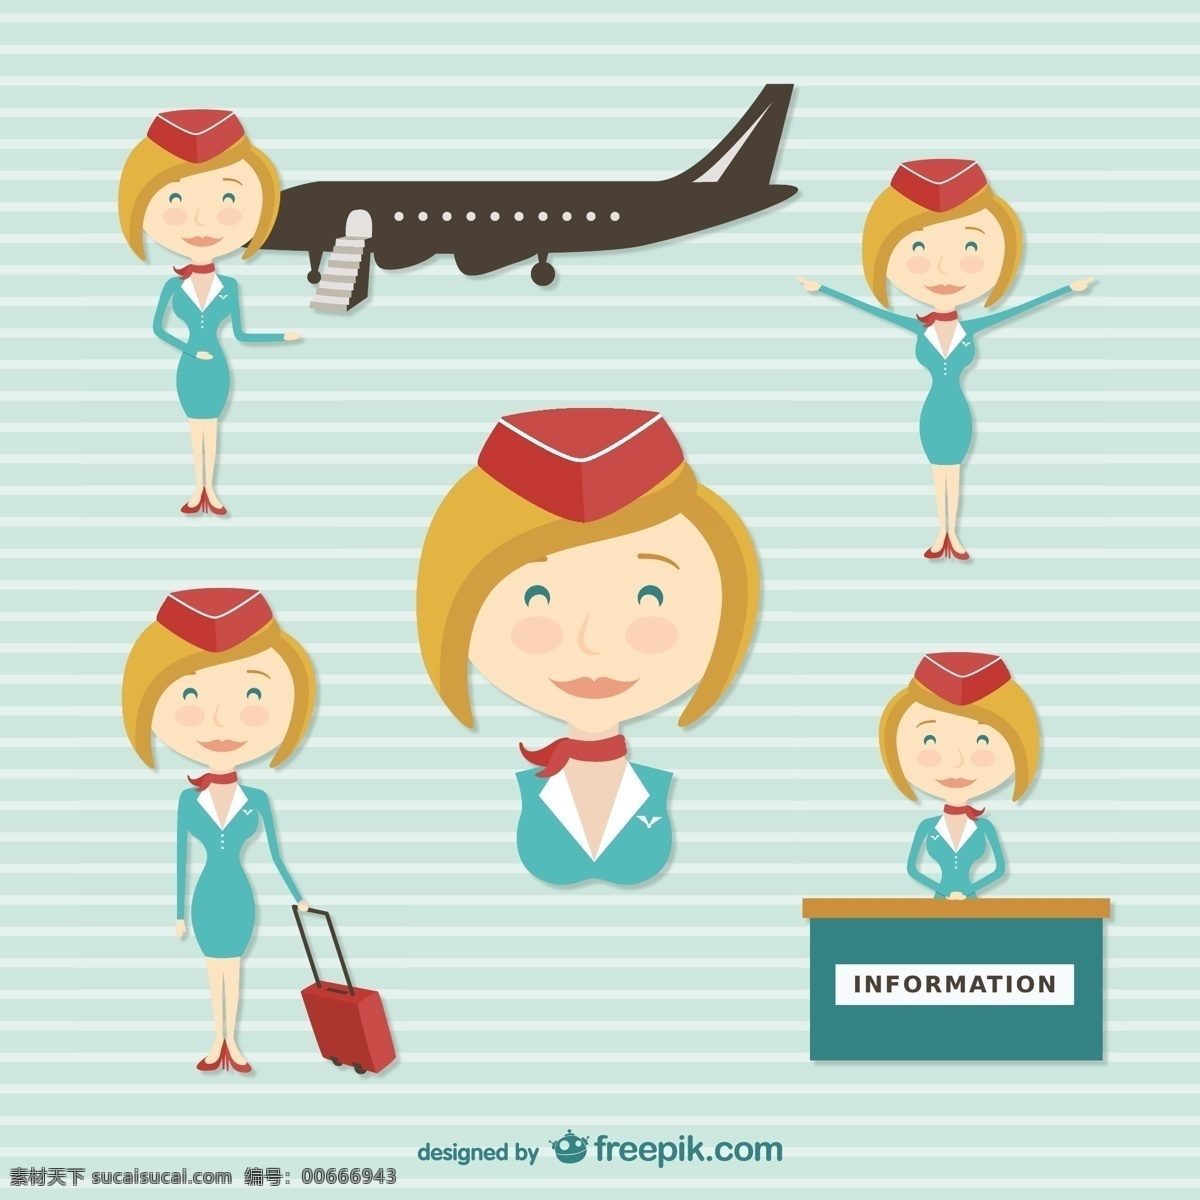 空中 乘务员 卡通 人物 旅游 工作 性格 工人 机场 卡通人物 飞行 航空公司 空姐 服务员 青色 天蓝色